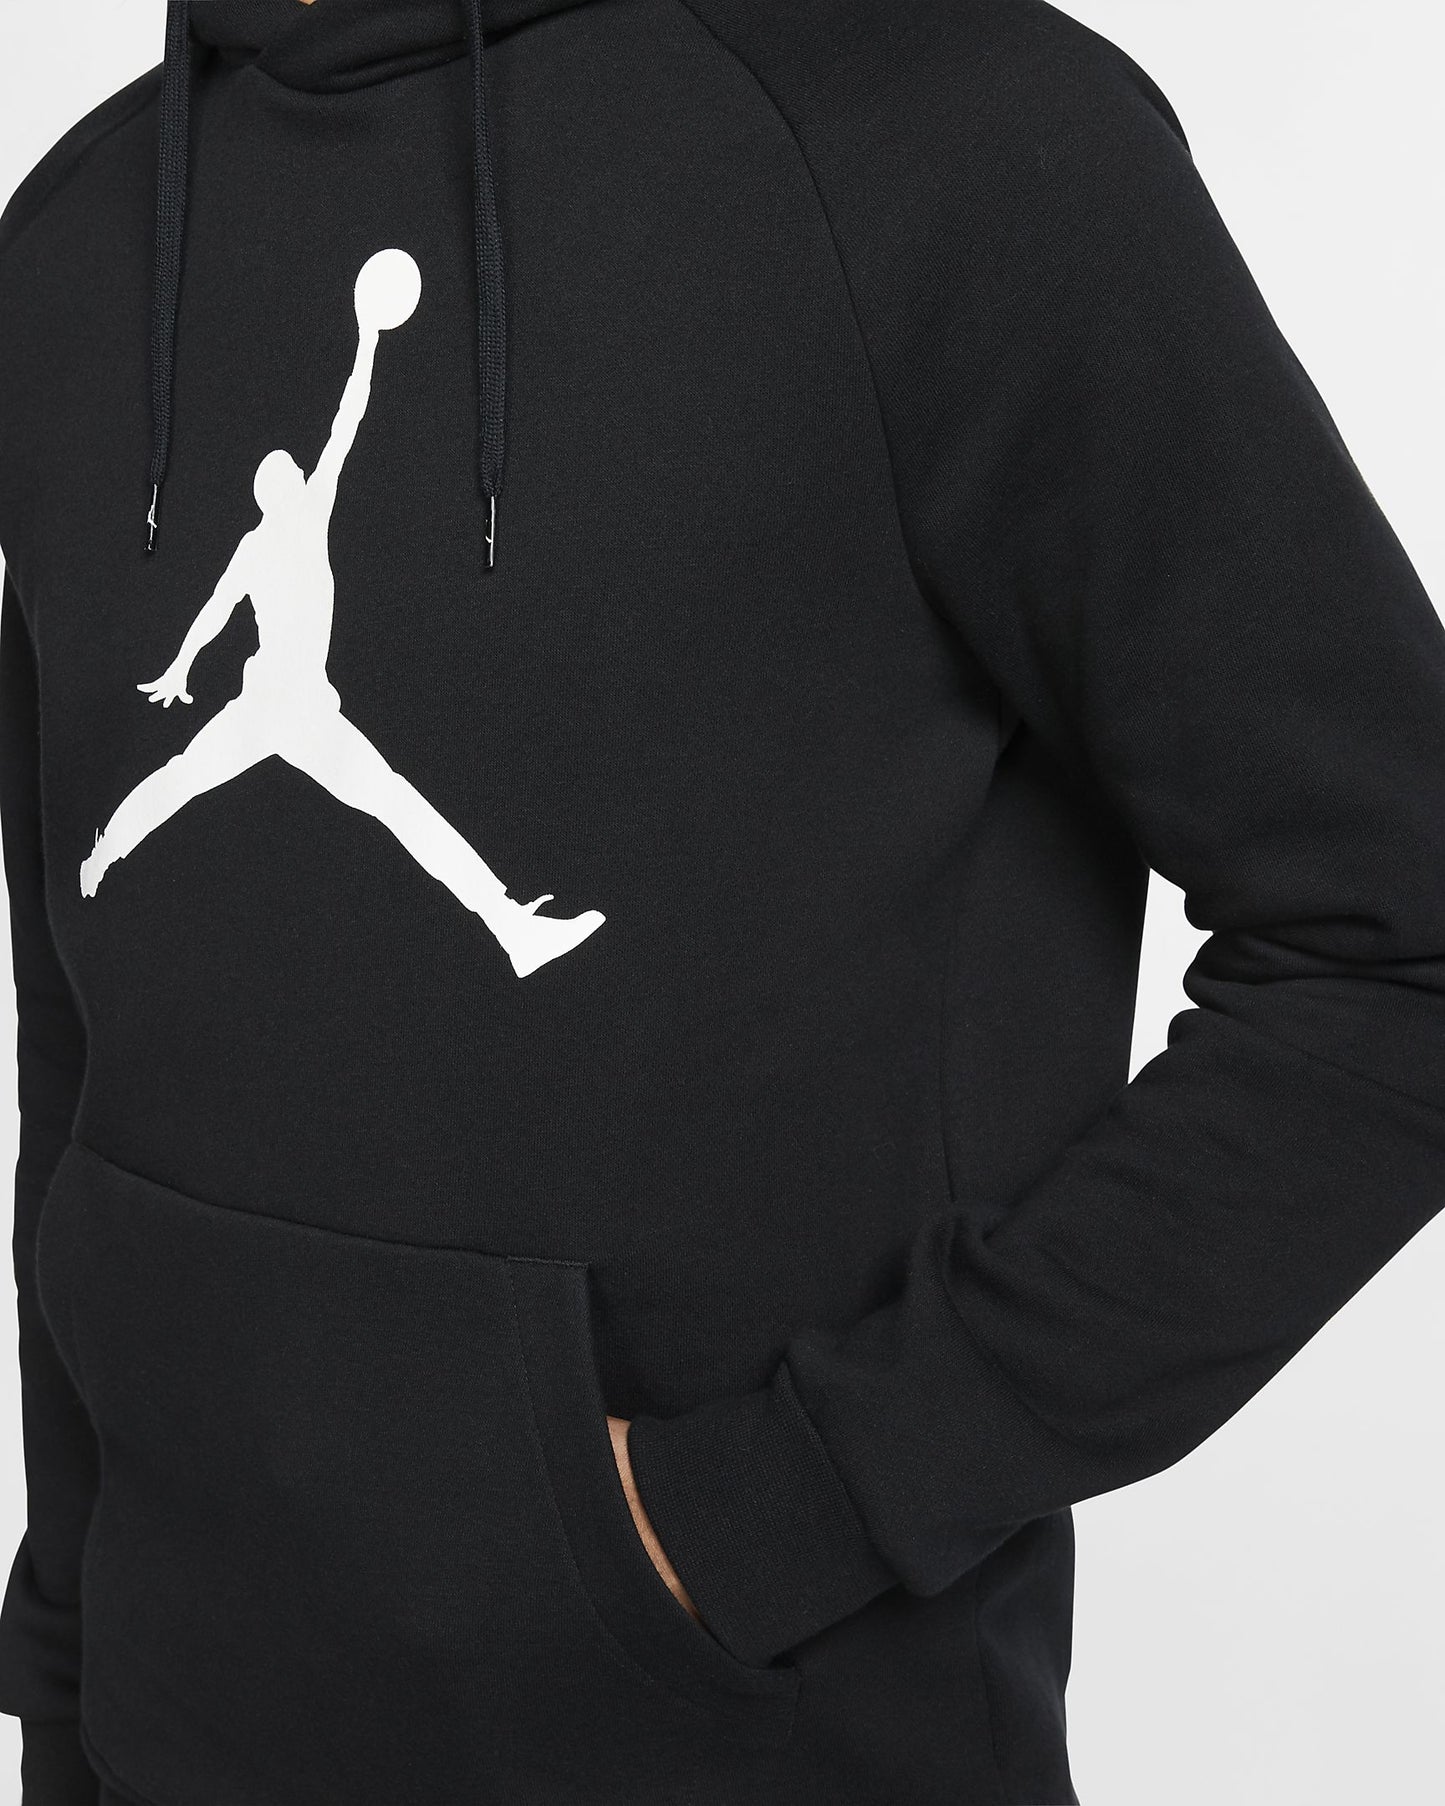 Men's Fleece Pullover Hoodie Jordan Jumpman Logo-av3145-010 - Discount Store